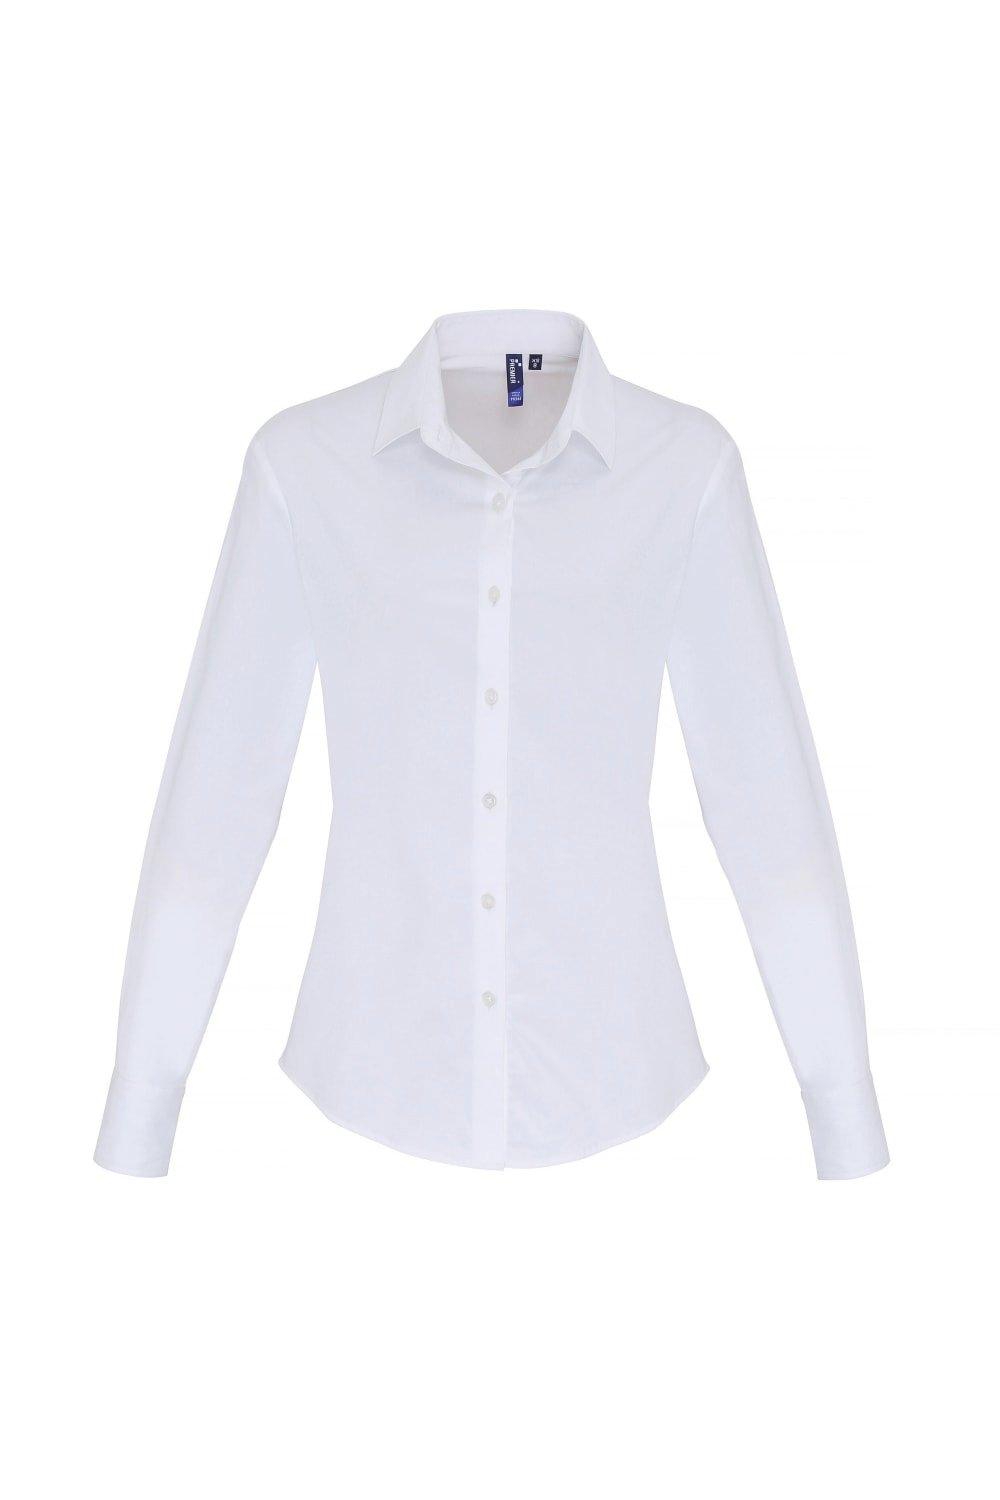 Блуза из эластичного поплина с длинными рукавами Premier, белый